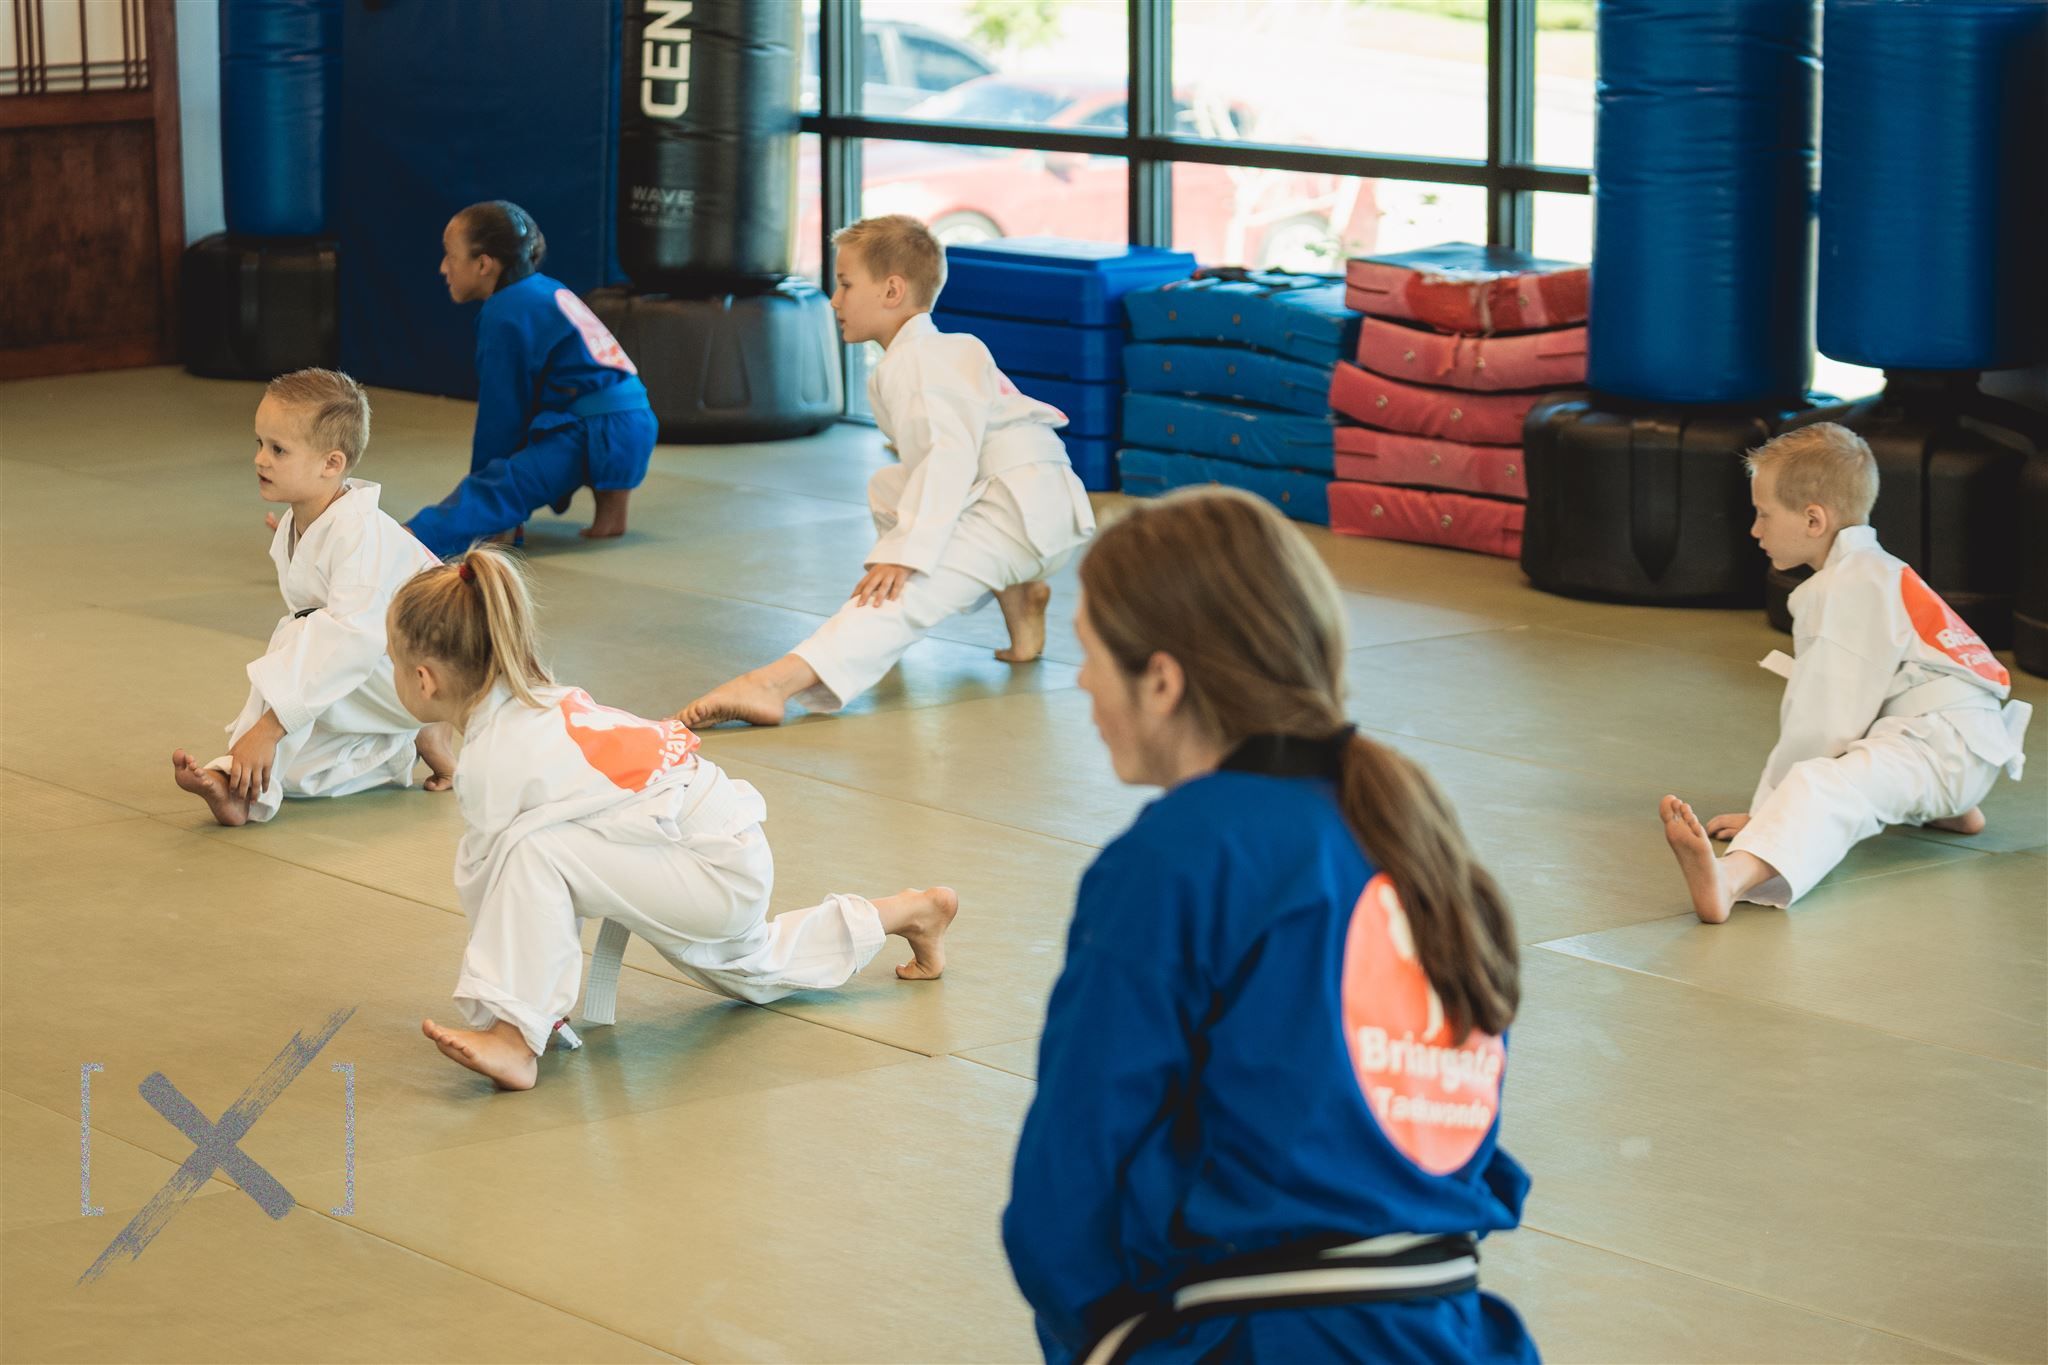 Kids Master Taekwondo With Ease | Featured Image